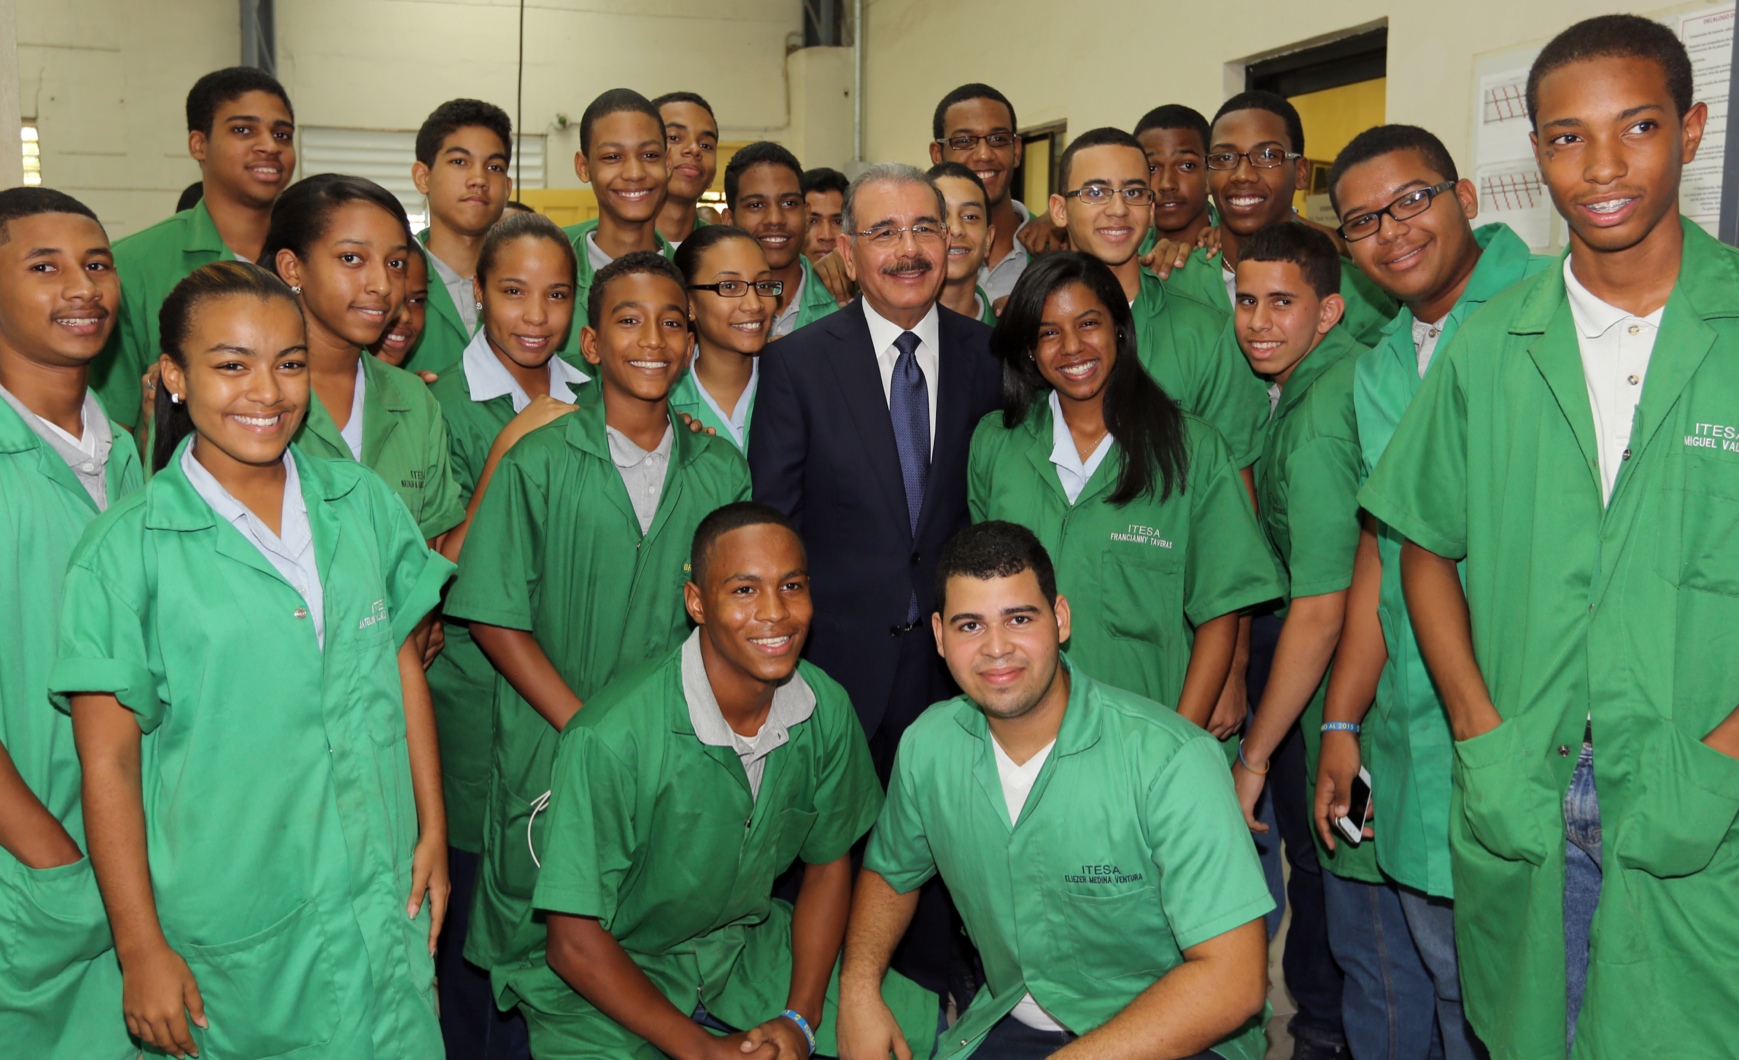 REPÚBLICA DOMINICANA: Presidente Danilo Medina invita a jóvenes a participar en construcción sociedad más justa, inclusiva y auspiciadora de bienestar